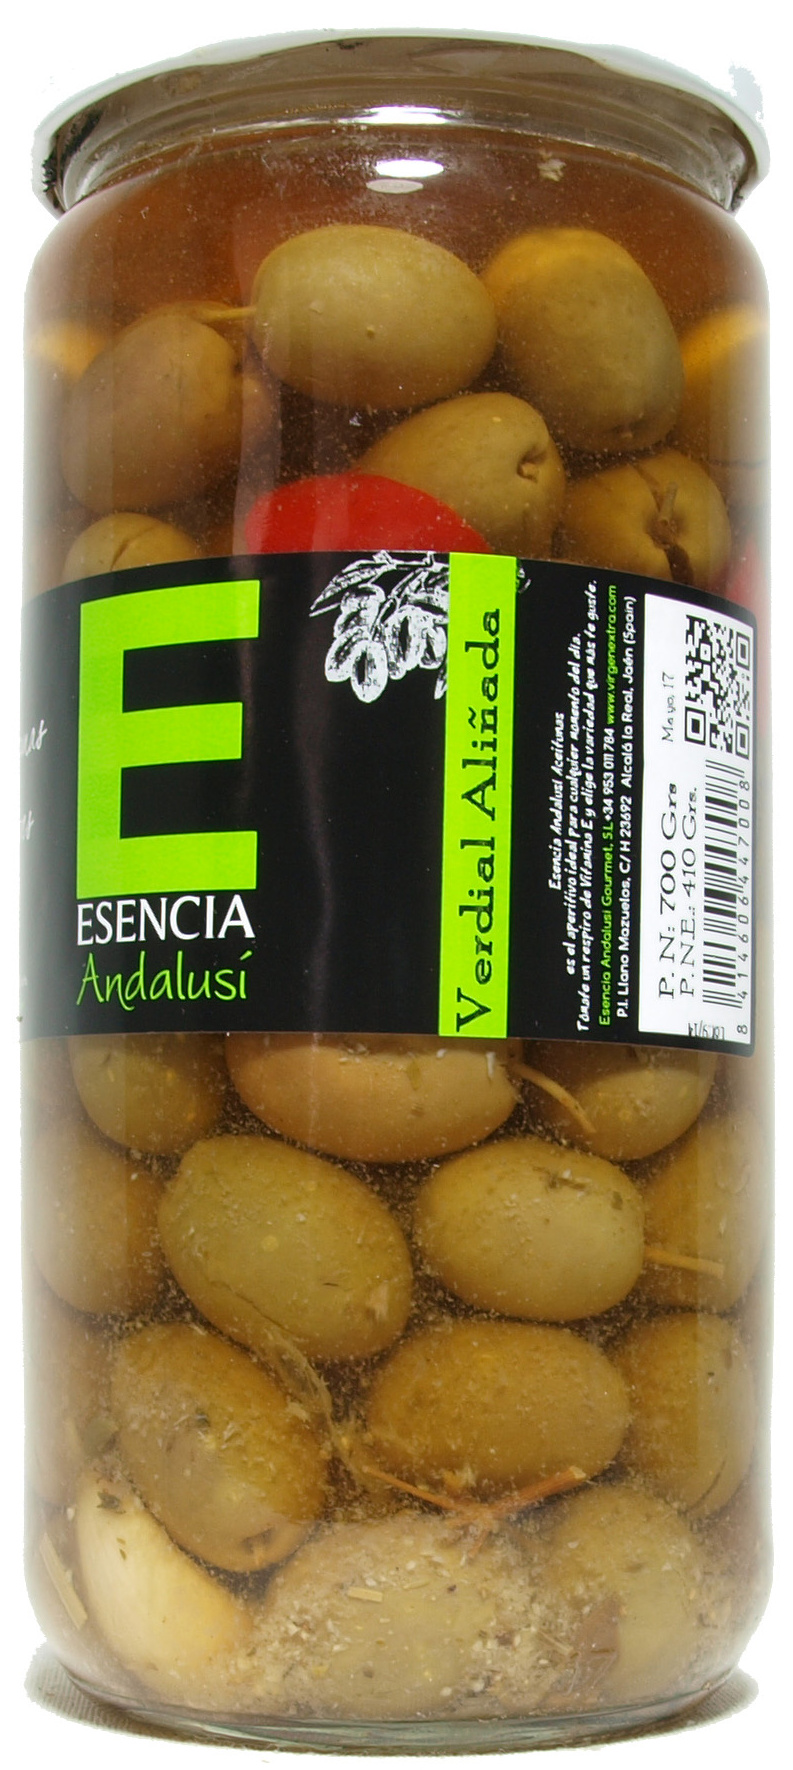 Aceitunas verdes aliñadas "Esencia Andalusí" Variedad verdial - Producte - es